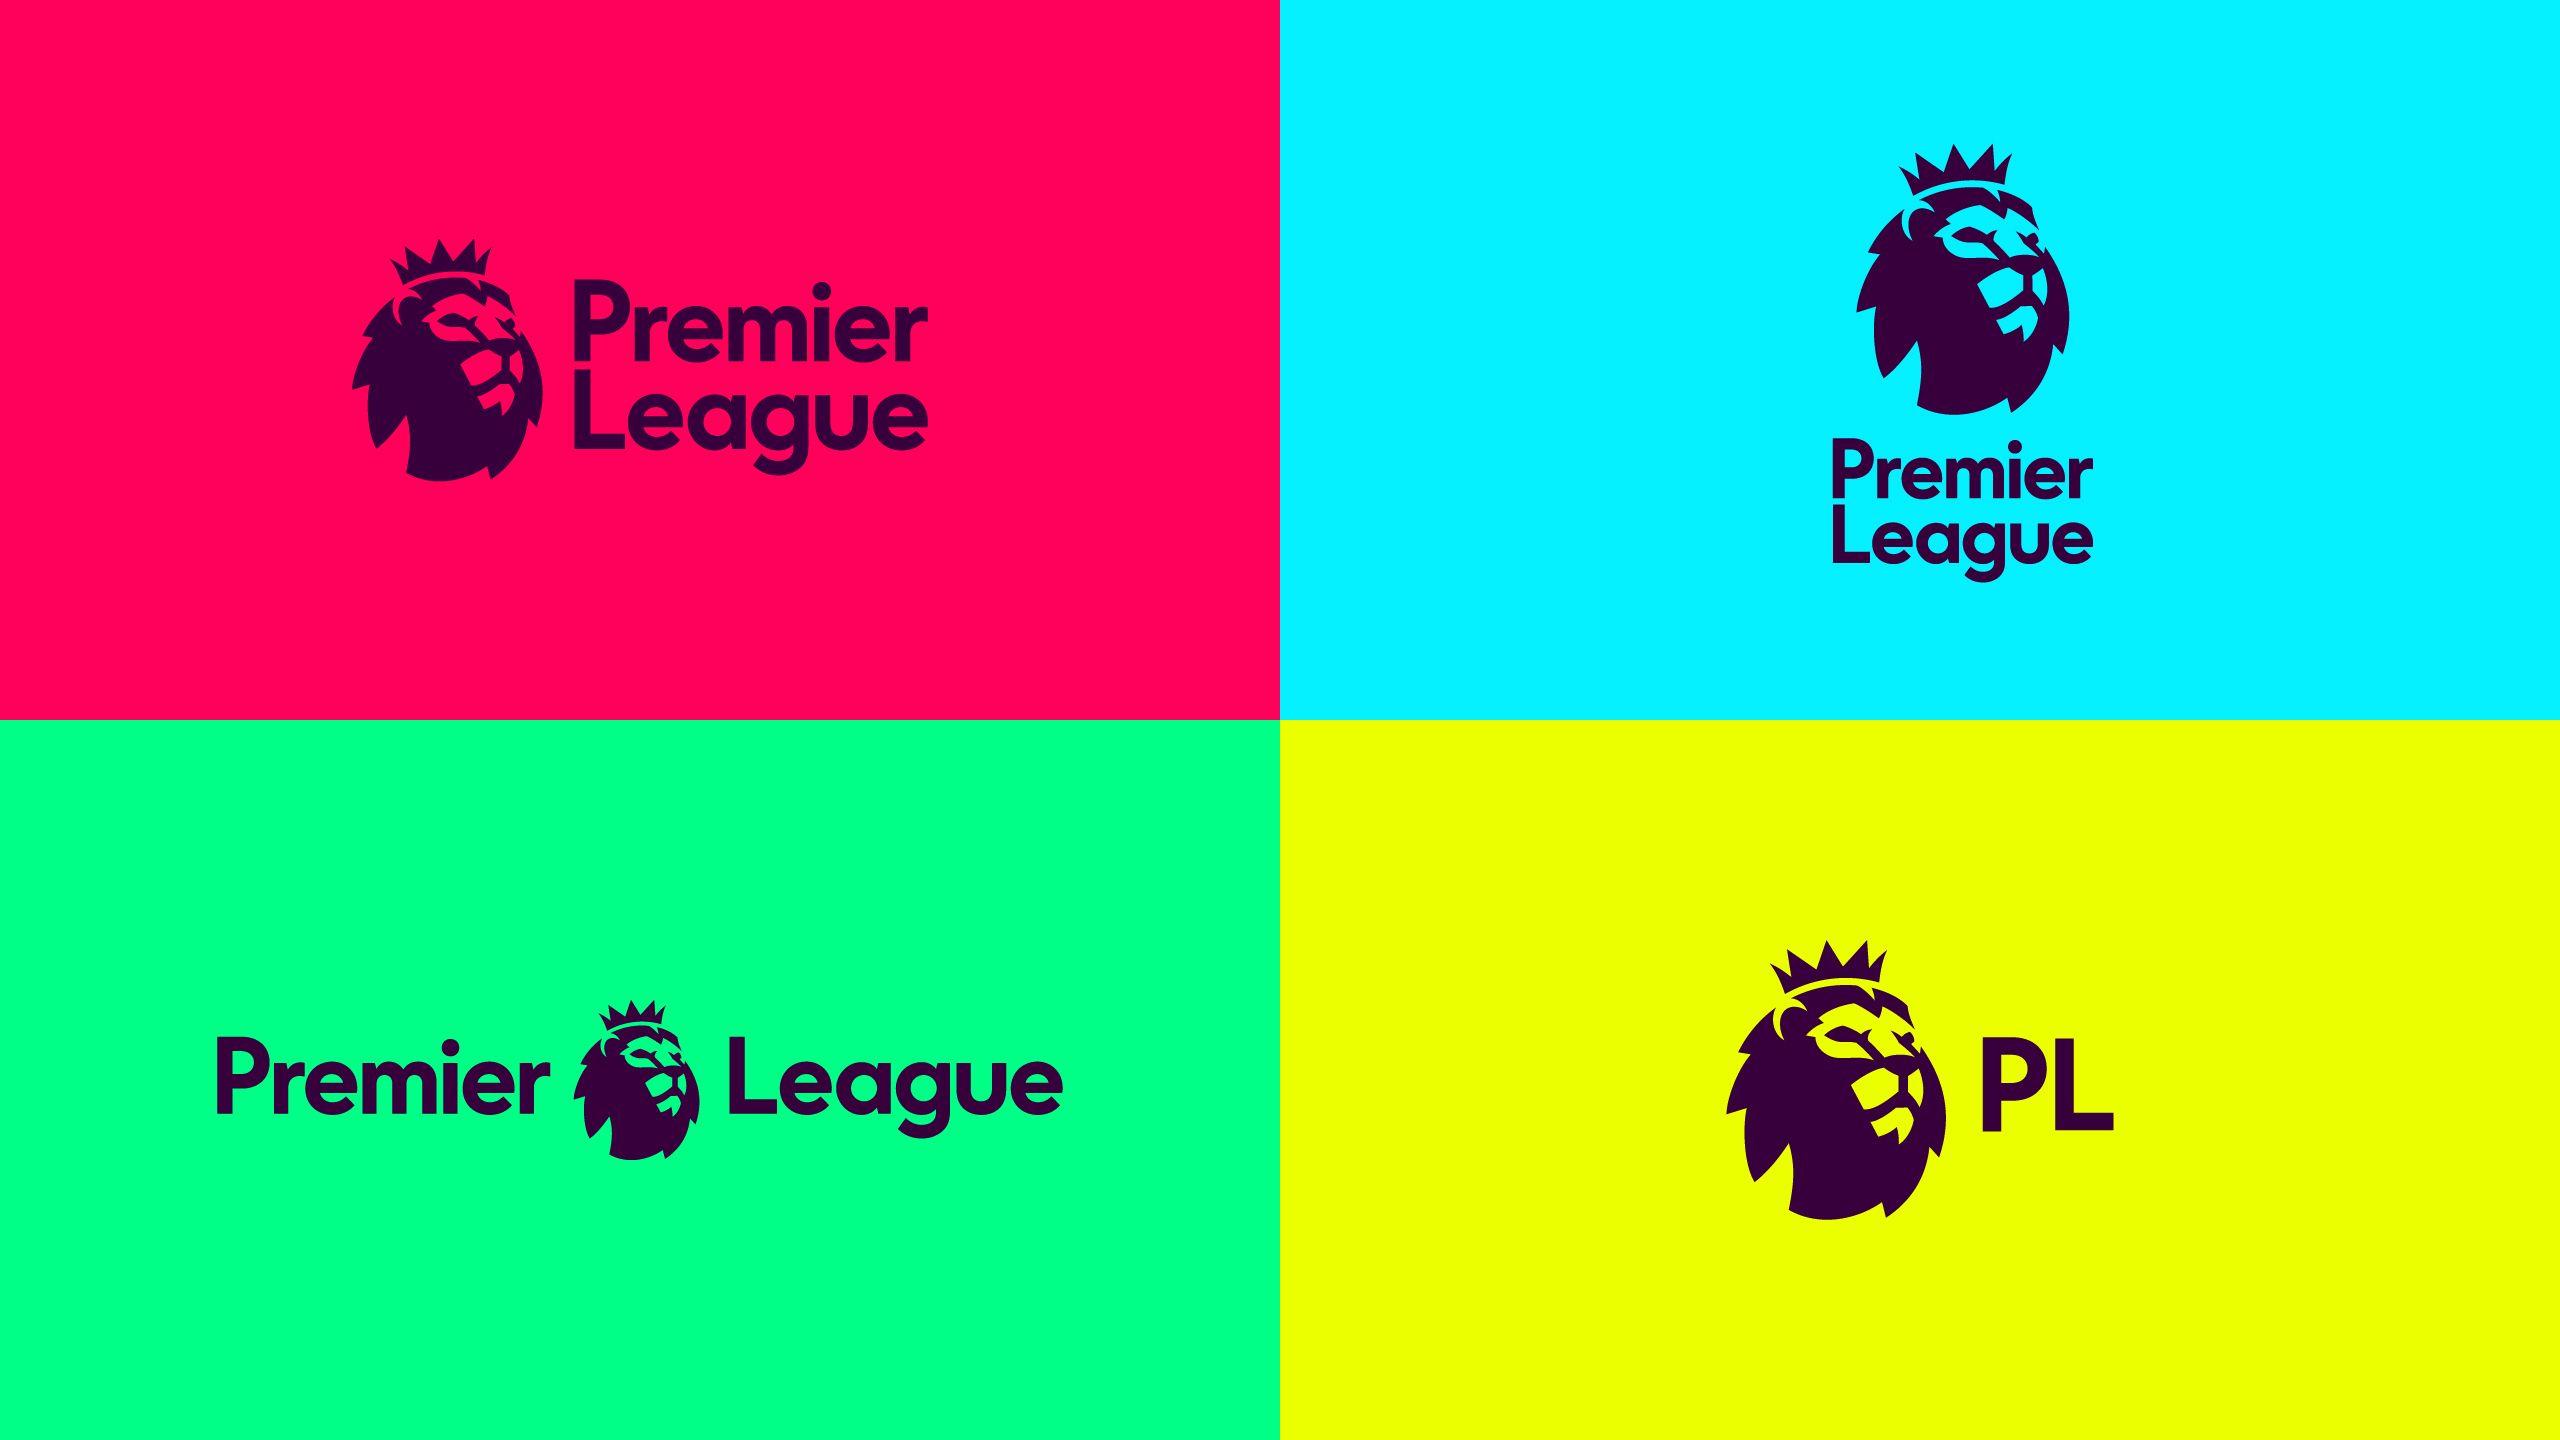 Premier League Wallpaper Free Premier League